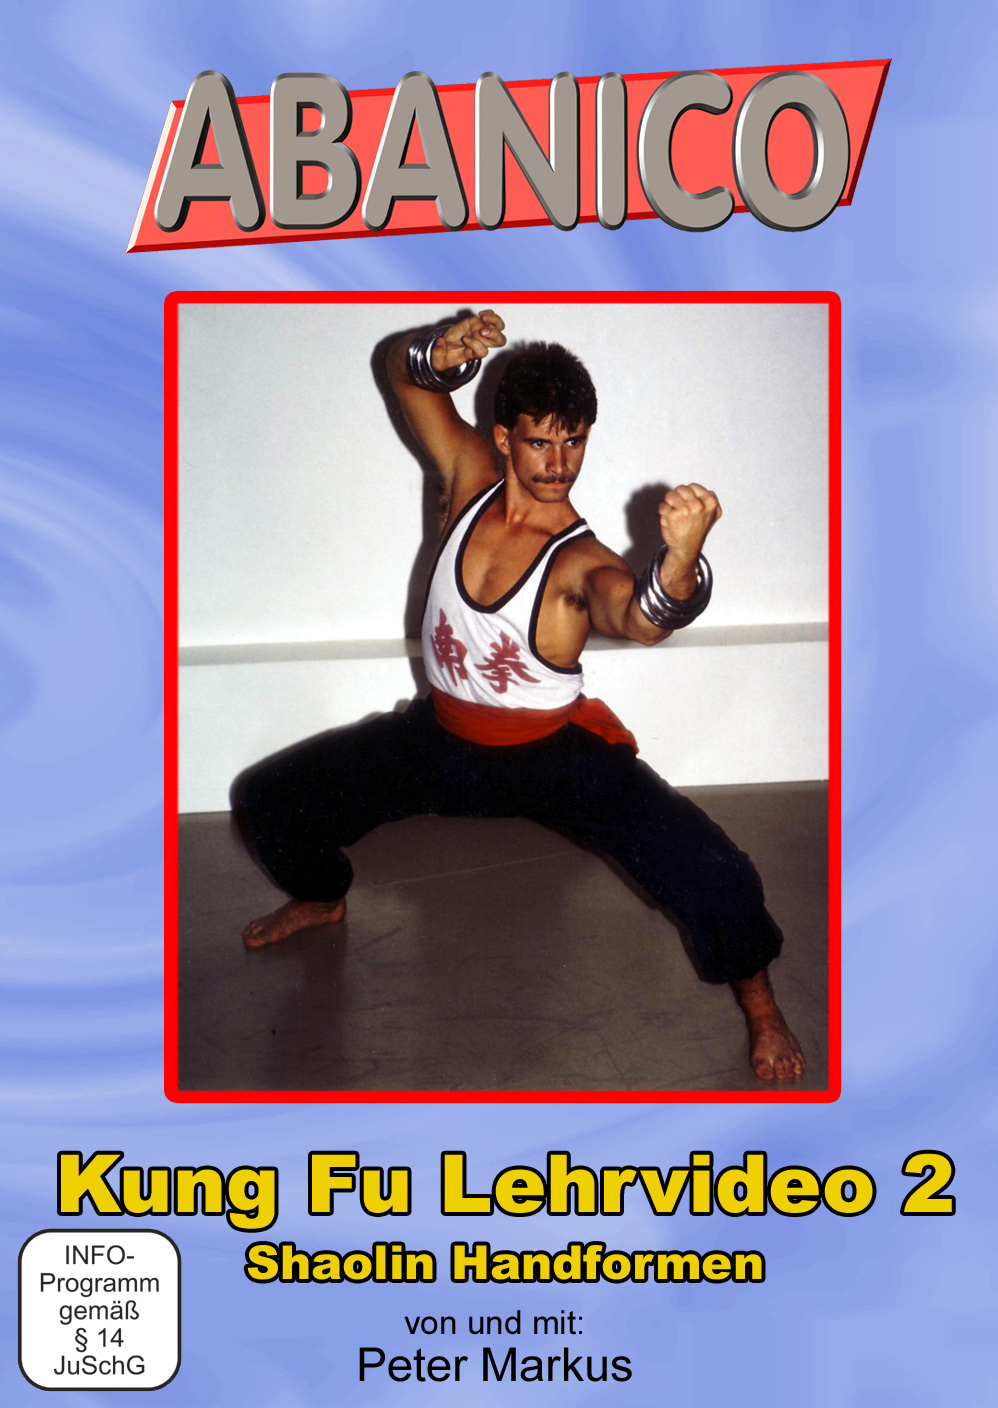 Kung Fu 2: Shaolin Handormen (Markus, Peter) DVD